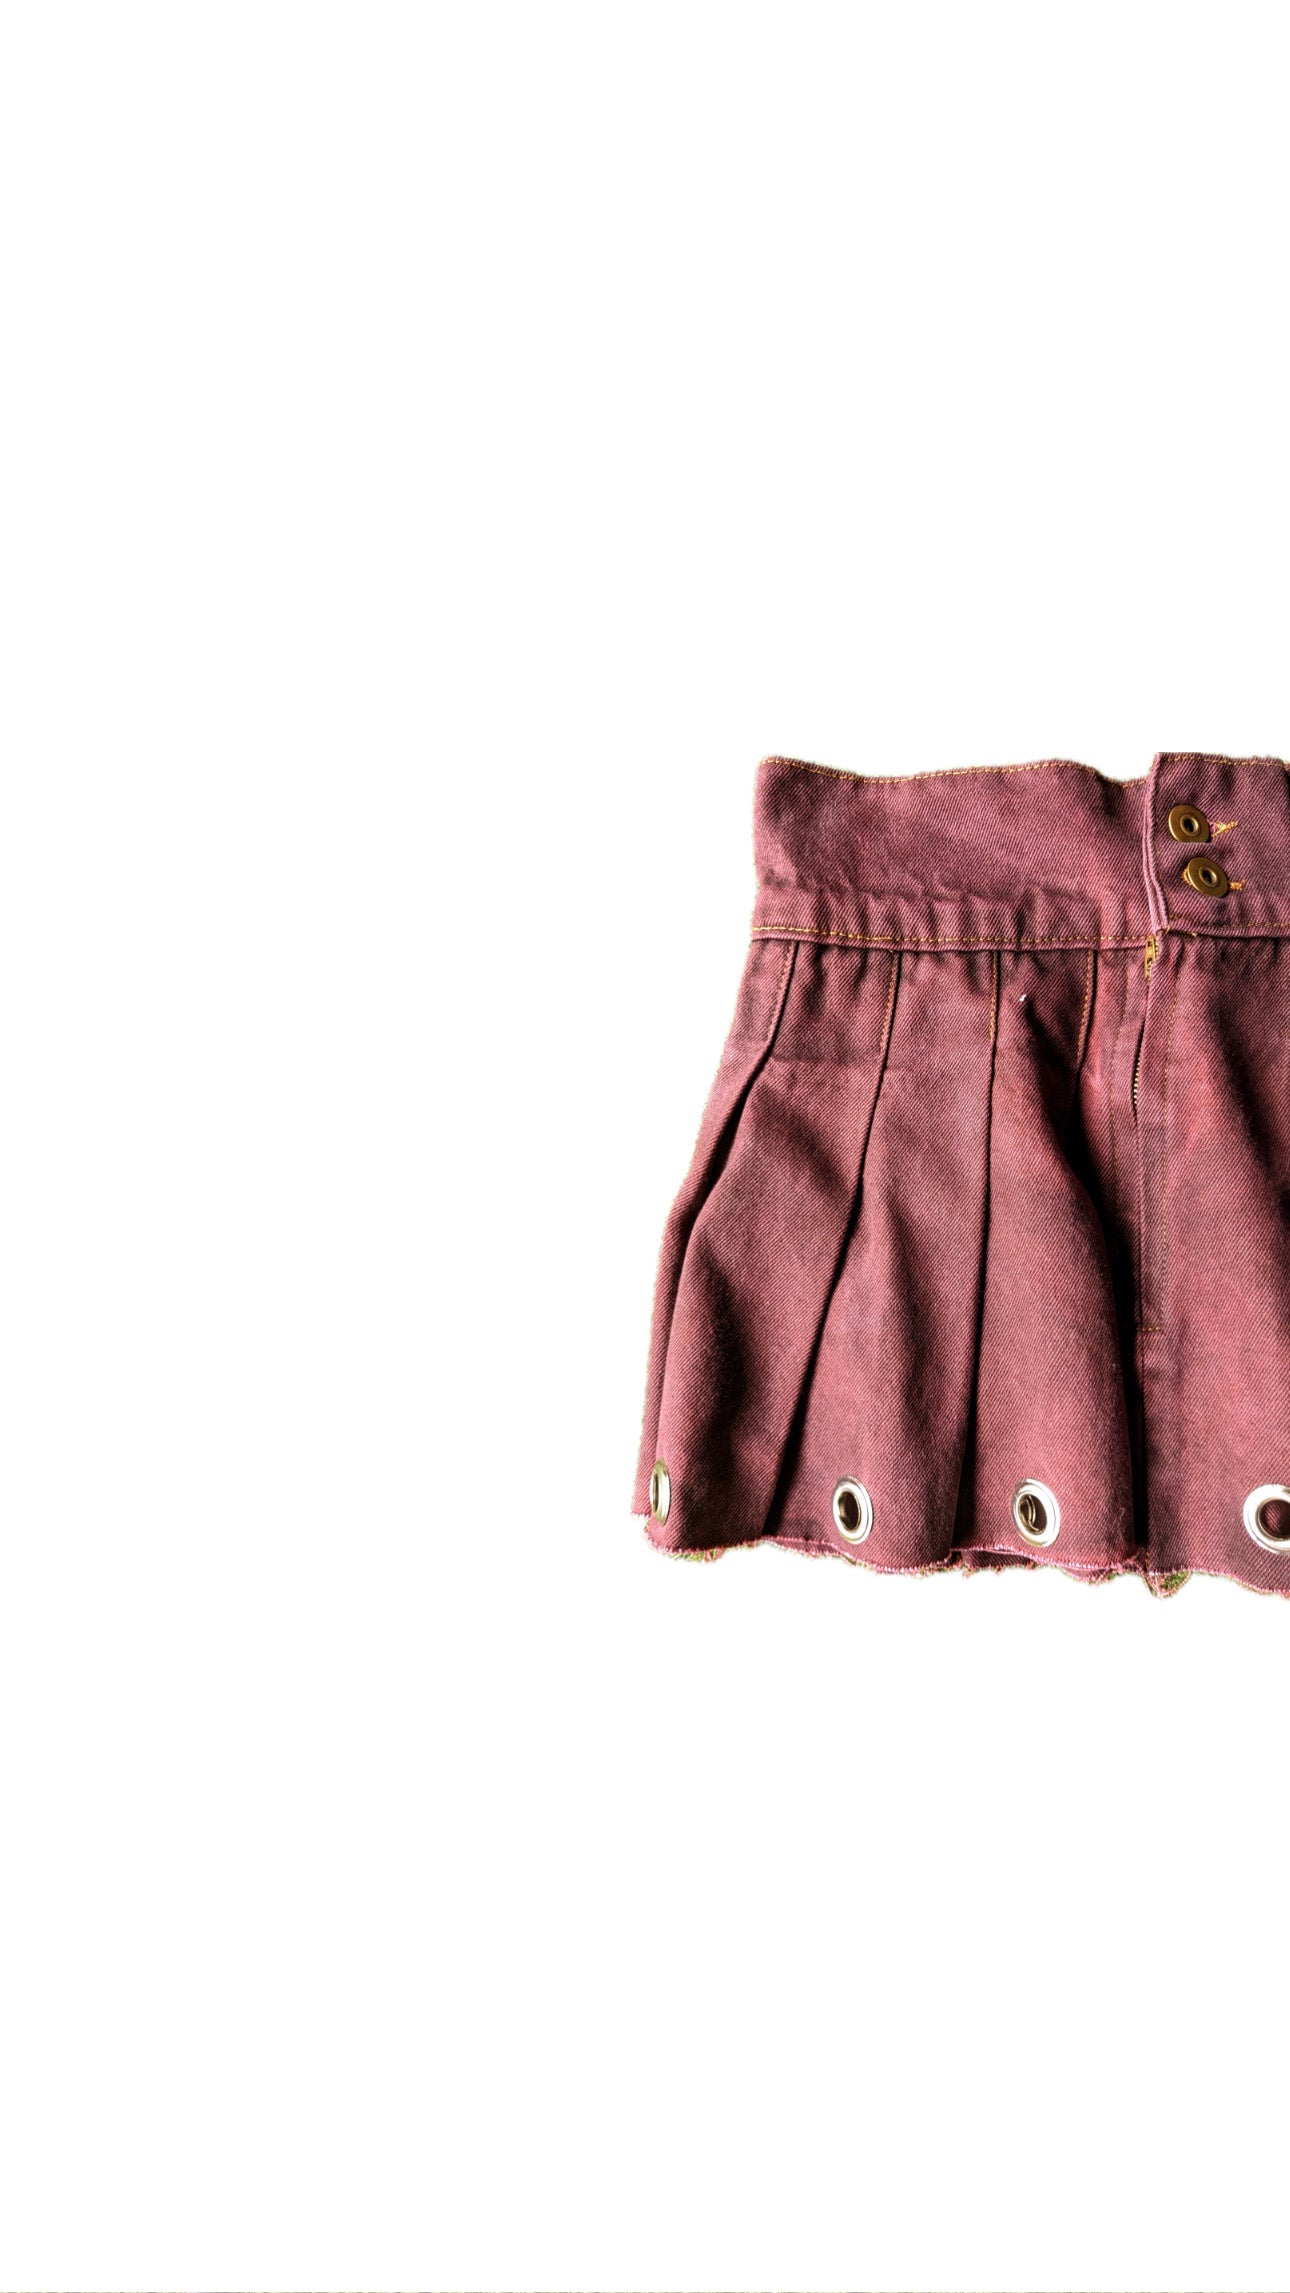 Acid Wash Upcycled Goth skirt